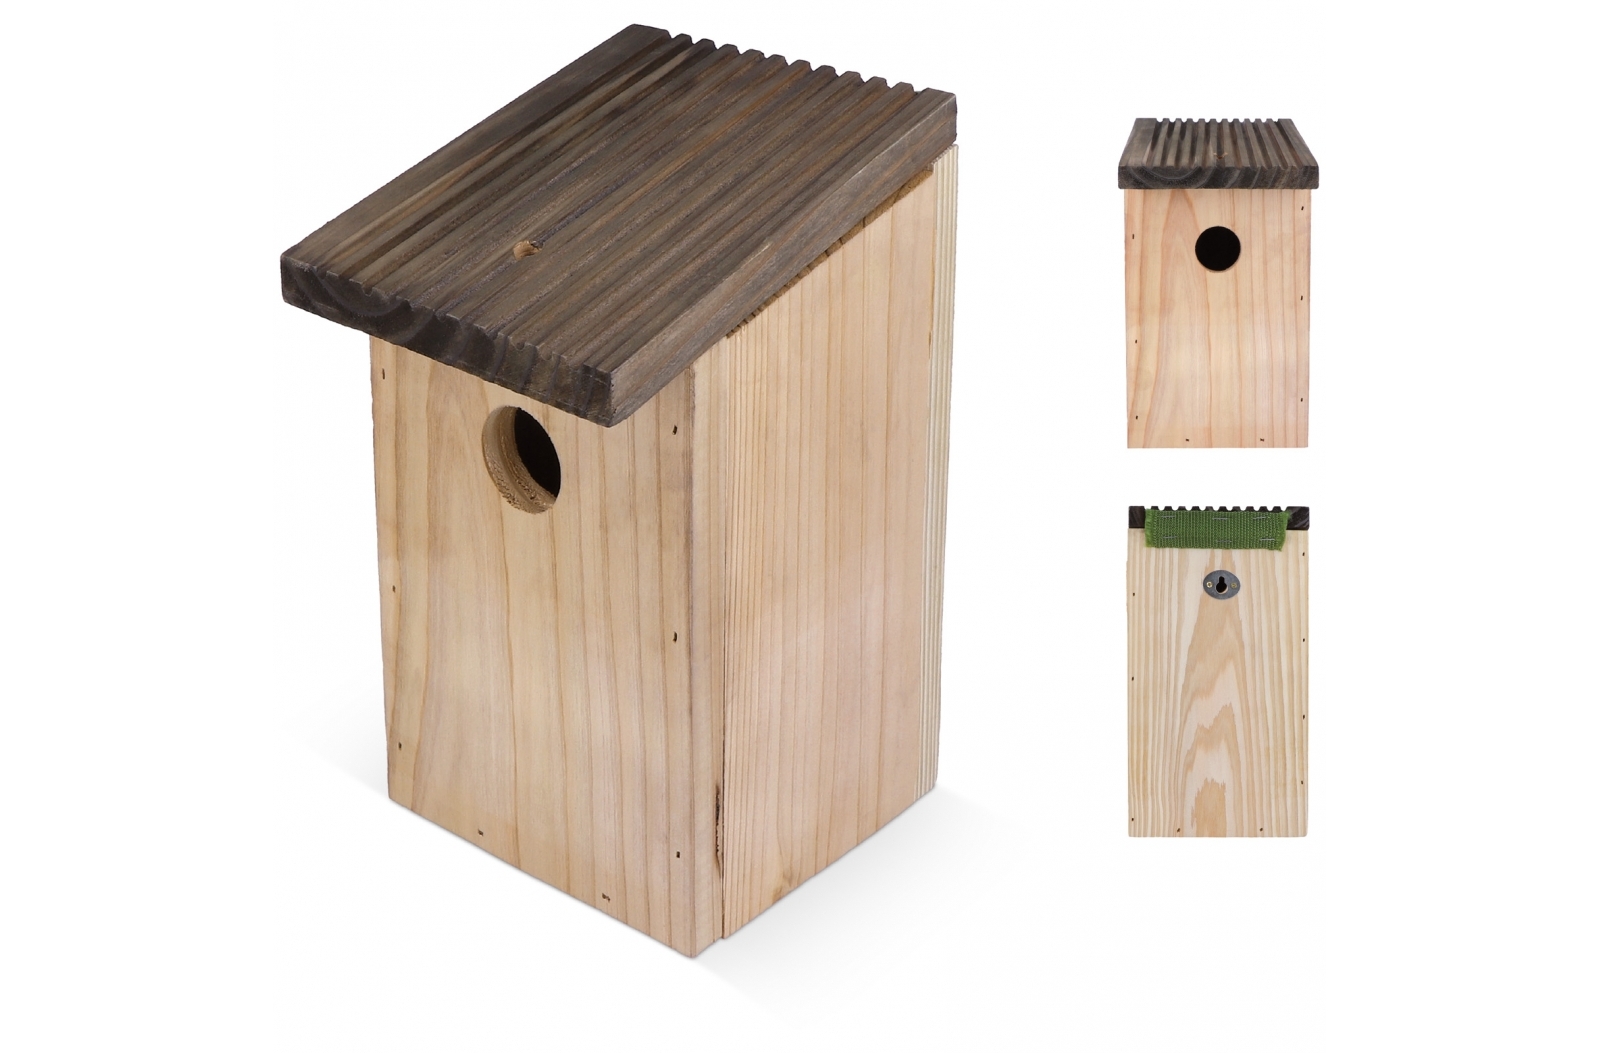 Caja Nidificadora Rústica para Pájaros - Leiva